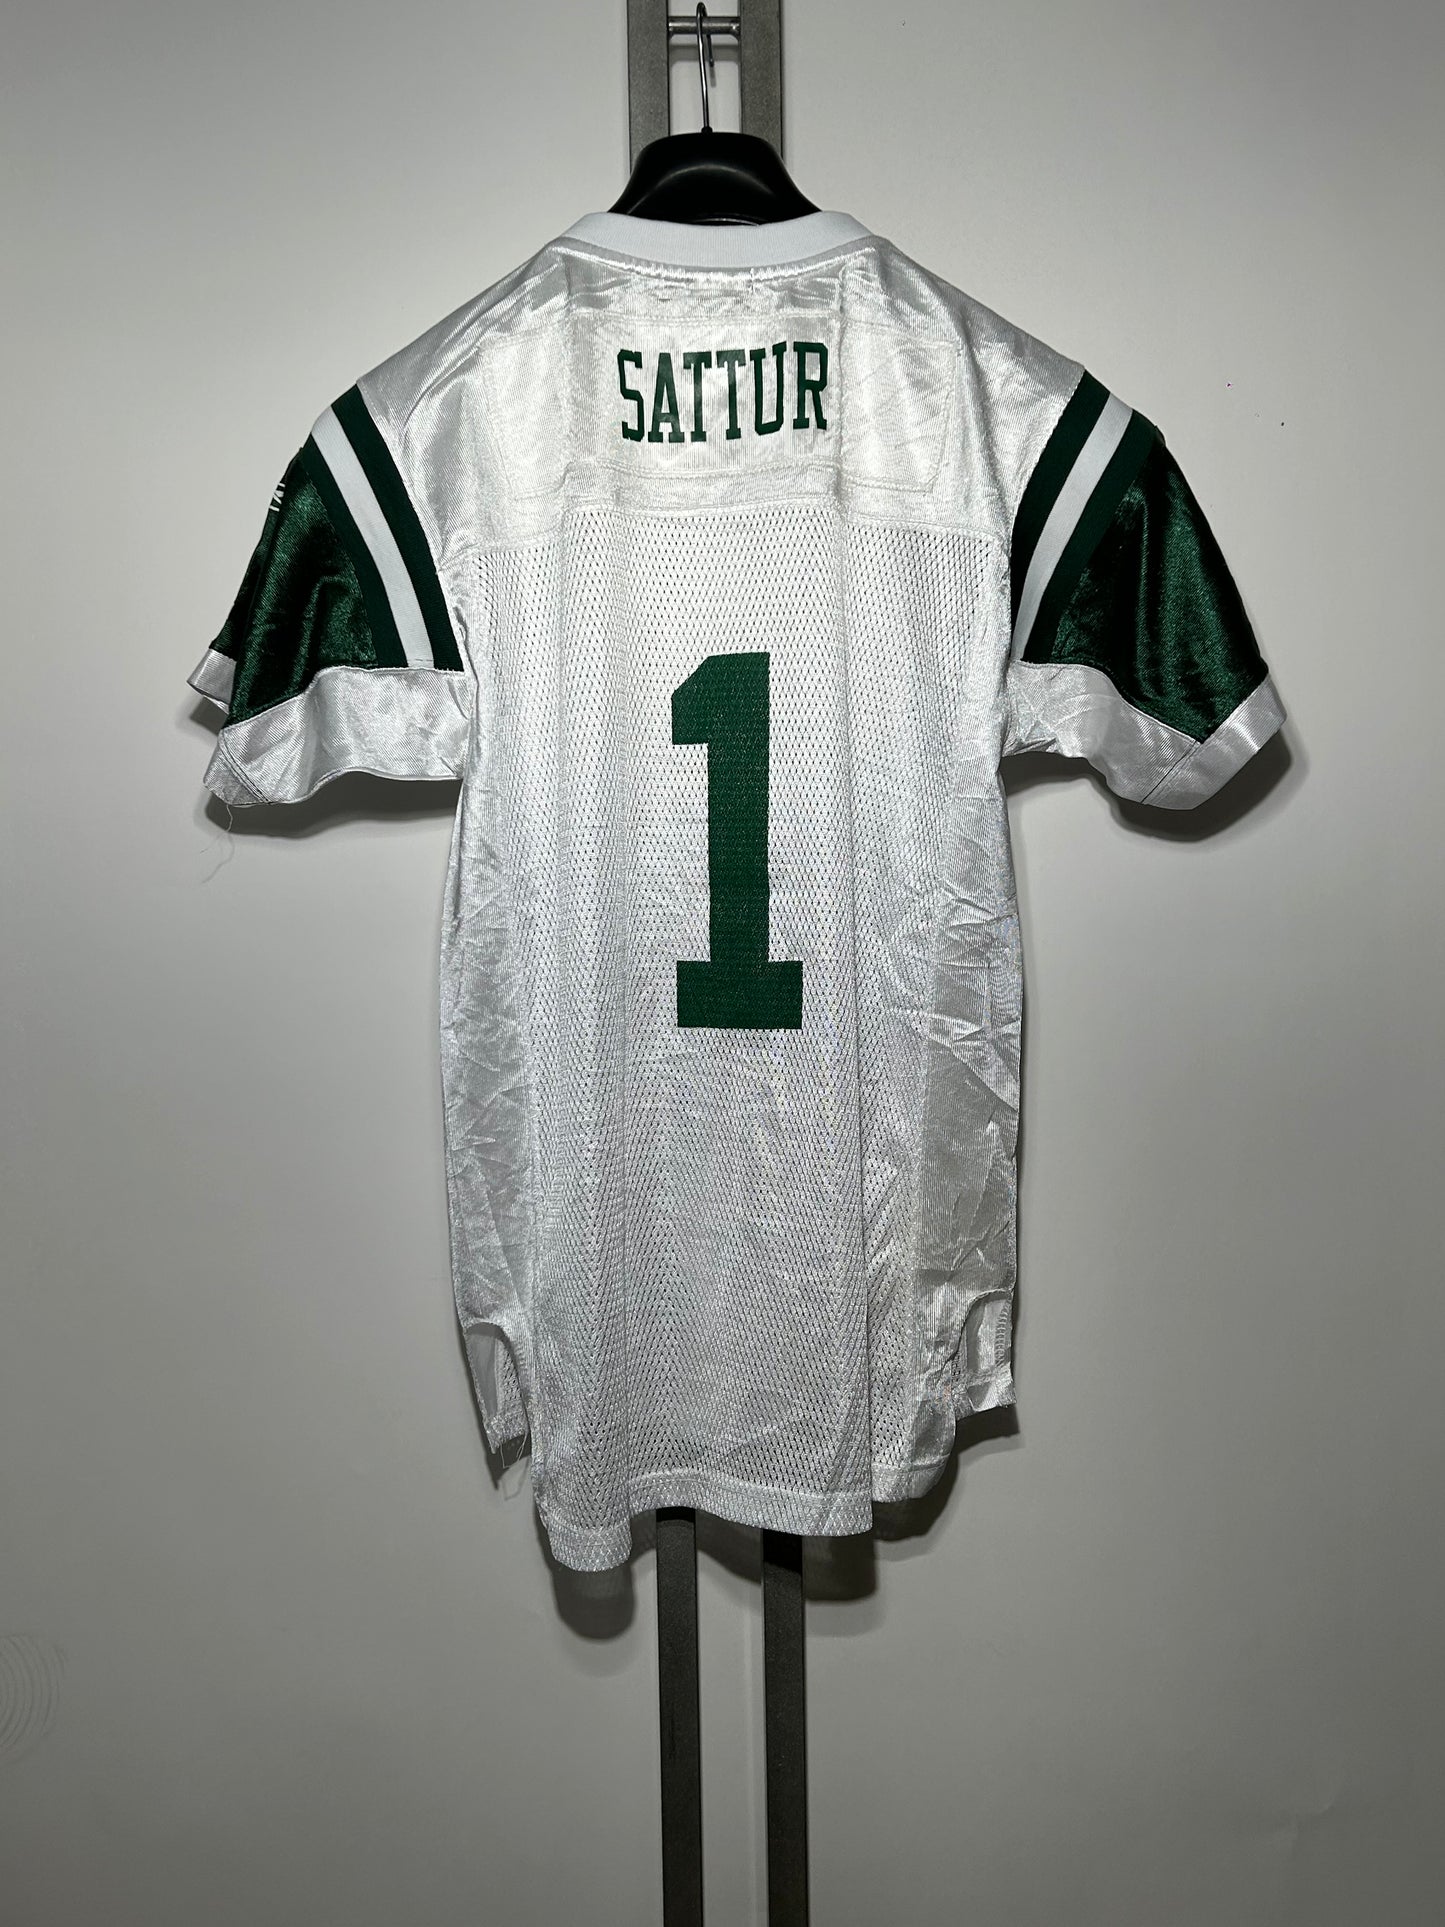 T-shirt da football New York Jets NFL Reebok Sattur